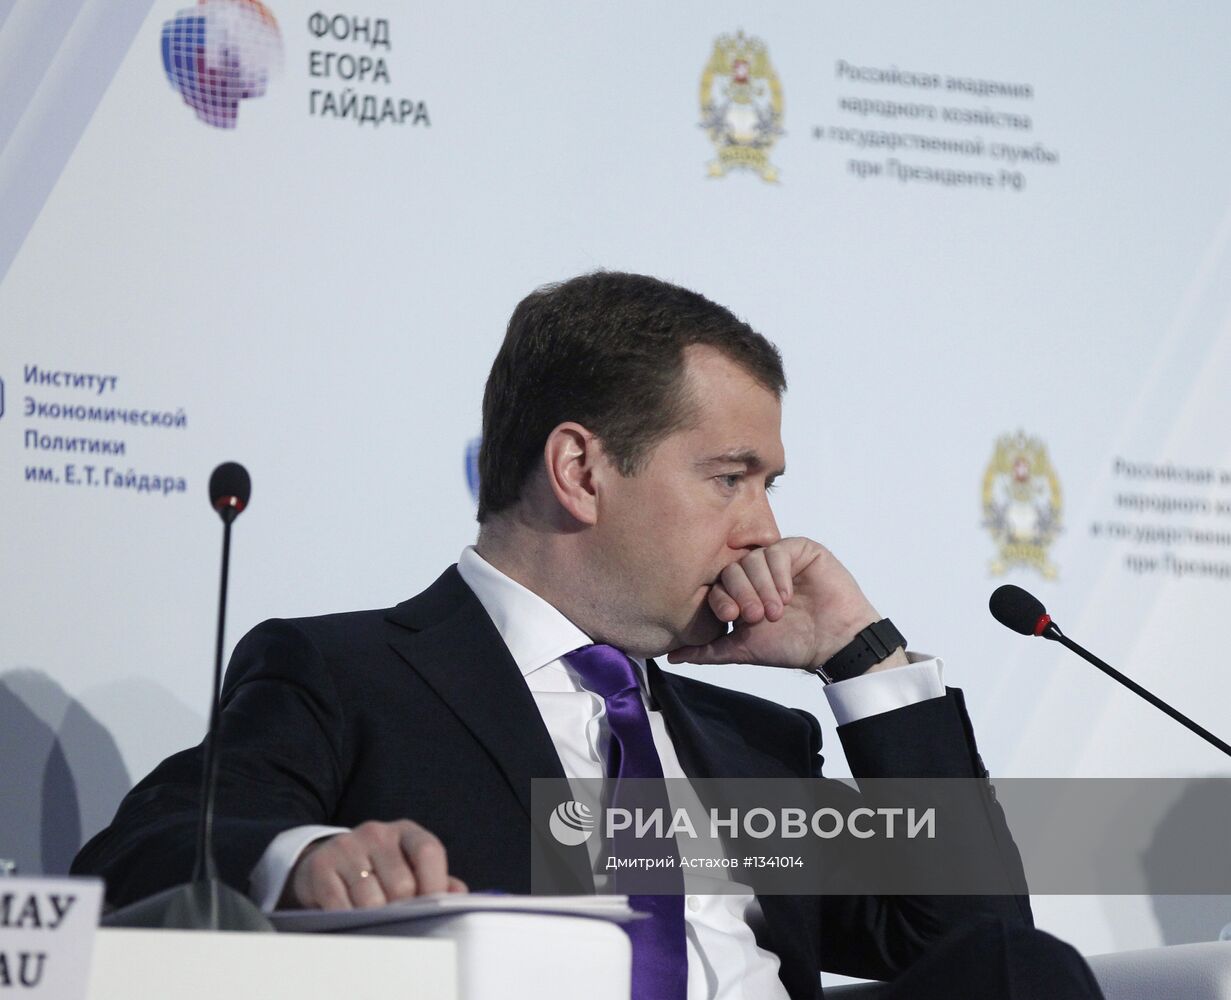 Д.Медведев на Гайдаровском форуме в Москве